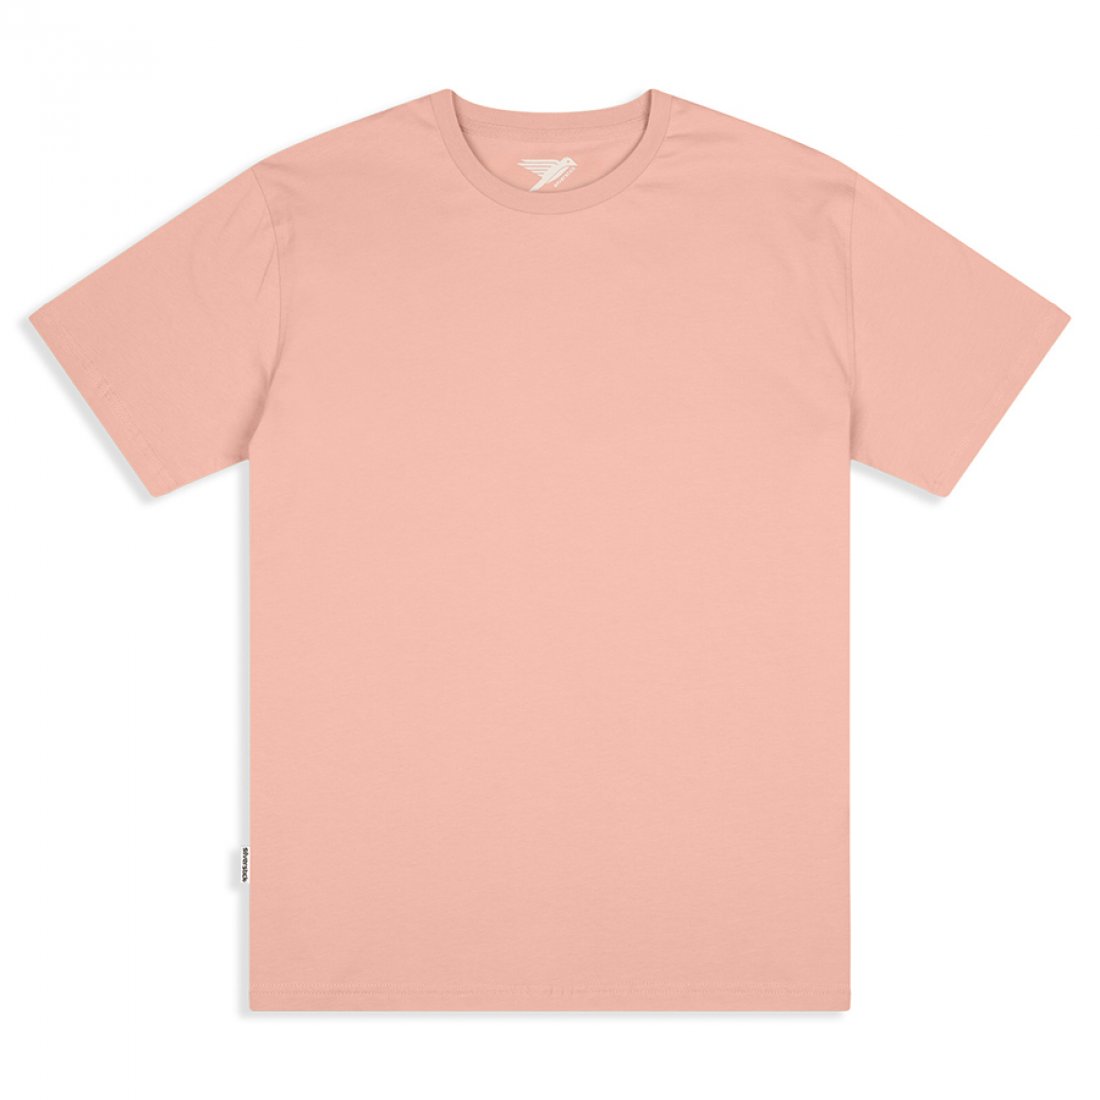 Men's Plain T-Shirt - Antique Pink - Silverstick